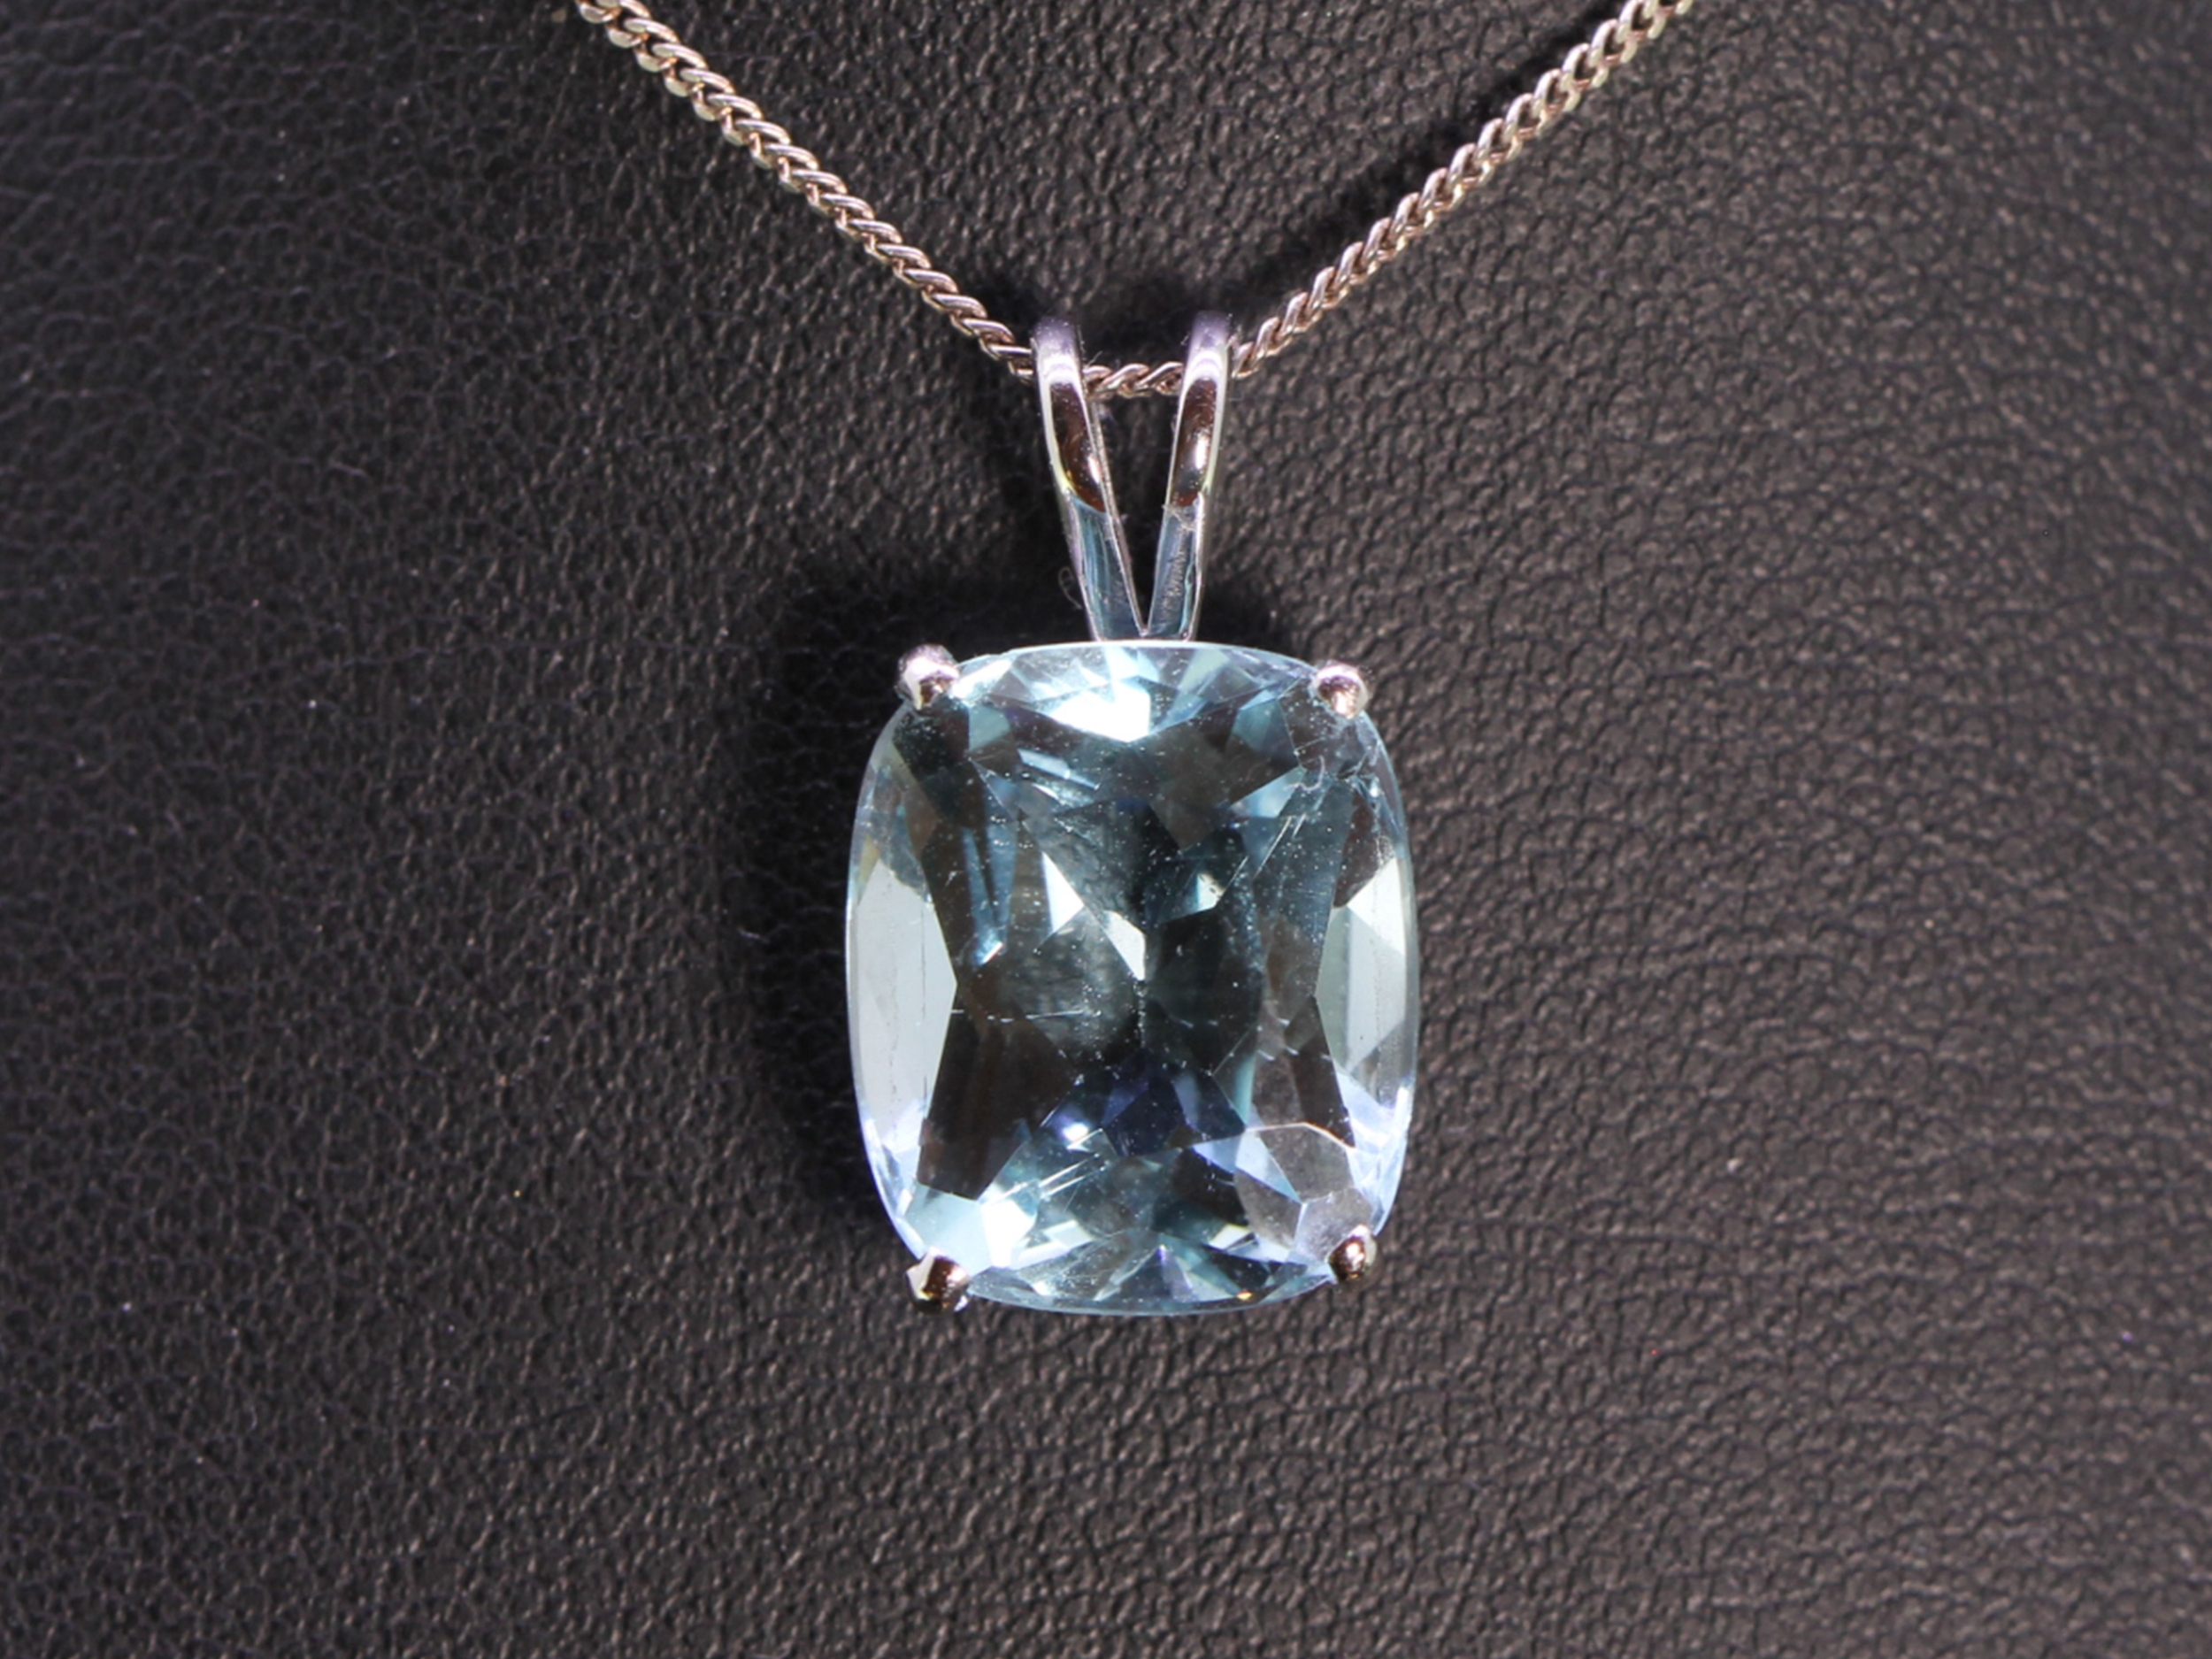 Stunning aquamarine 18 carat gold pendant